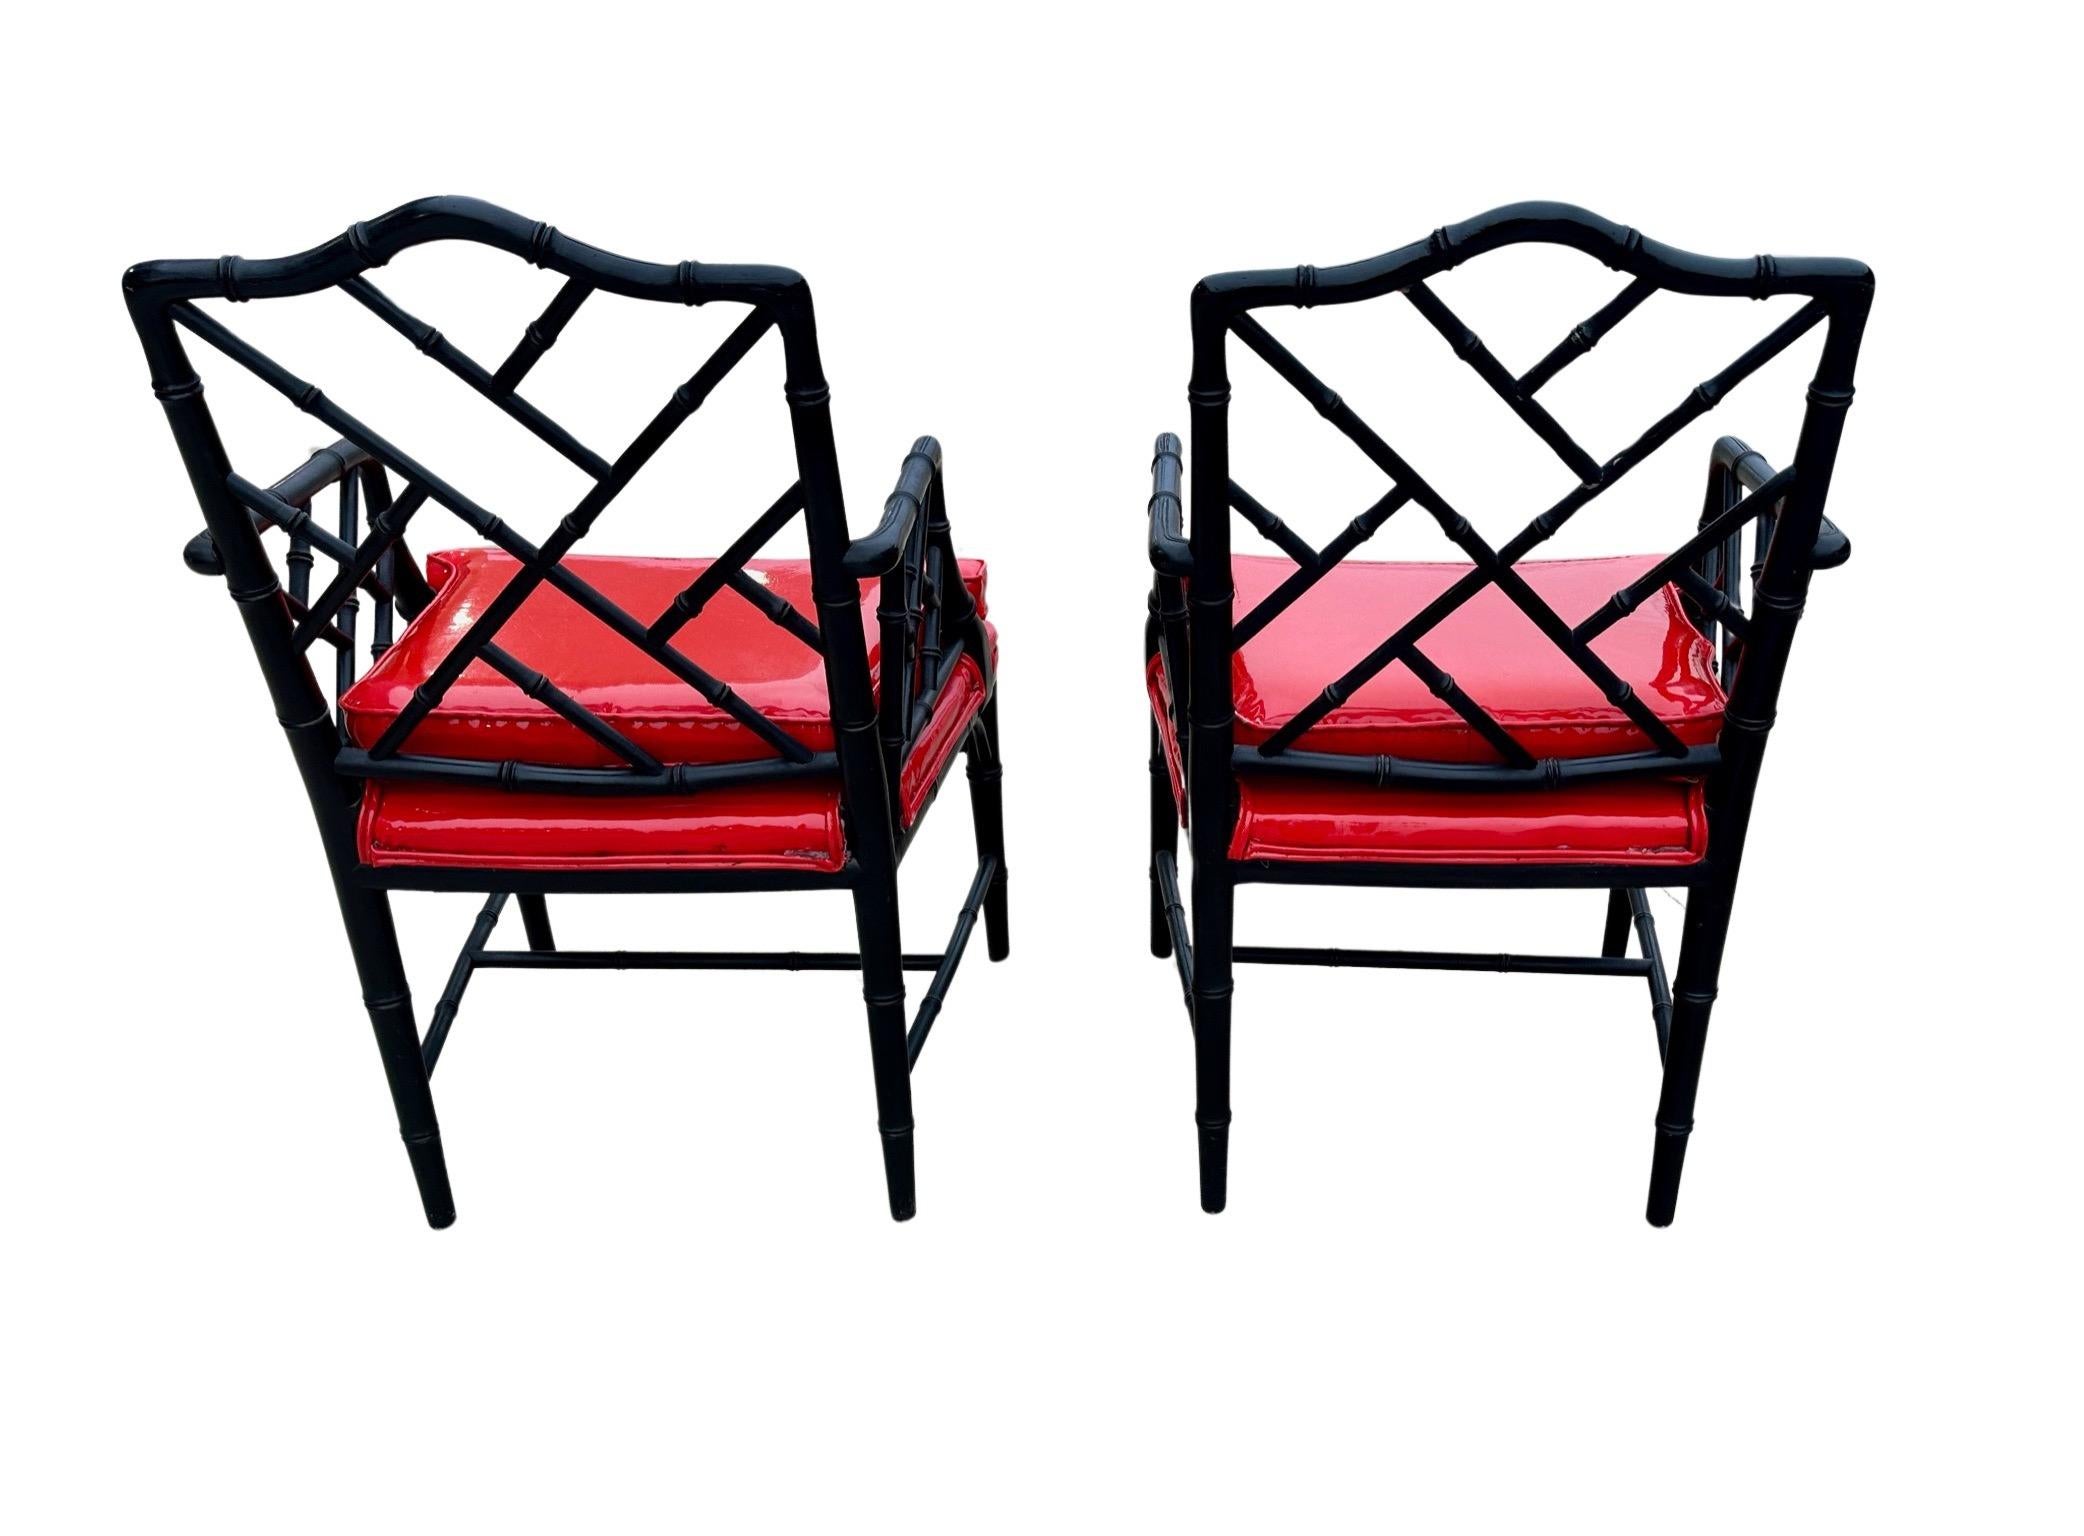 Paire de fauteuils Chippendale chinois en faux bambou Michael Taylor for Baker, peints en noir et recouverts de vinyle rouge verni.  Une couleur étonnante et une forme intemporelle !  Les chaises sont fermes, robustes et très confortables car les